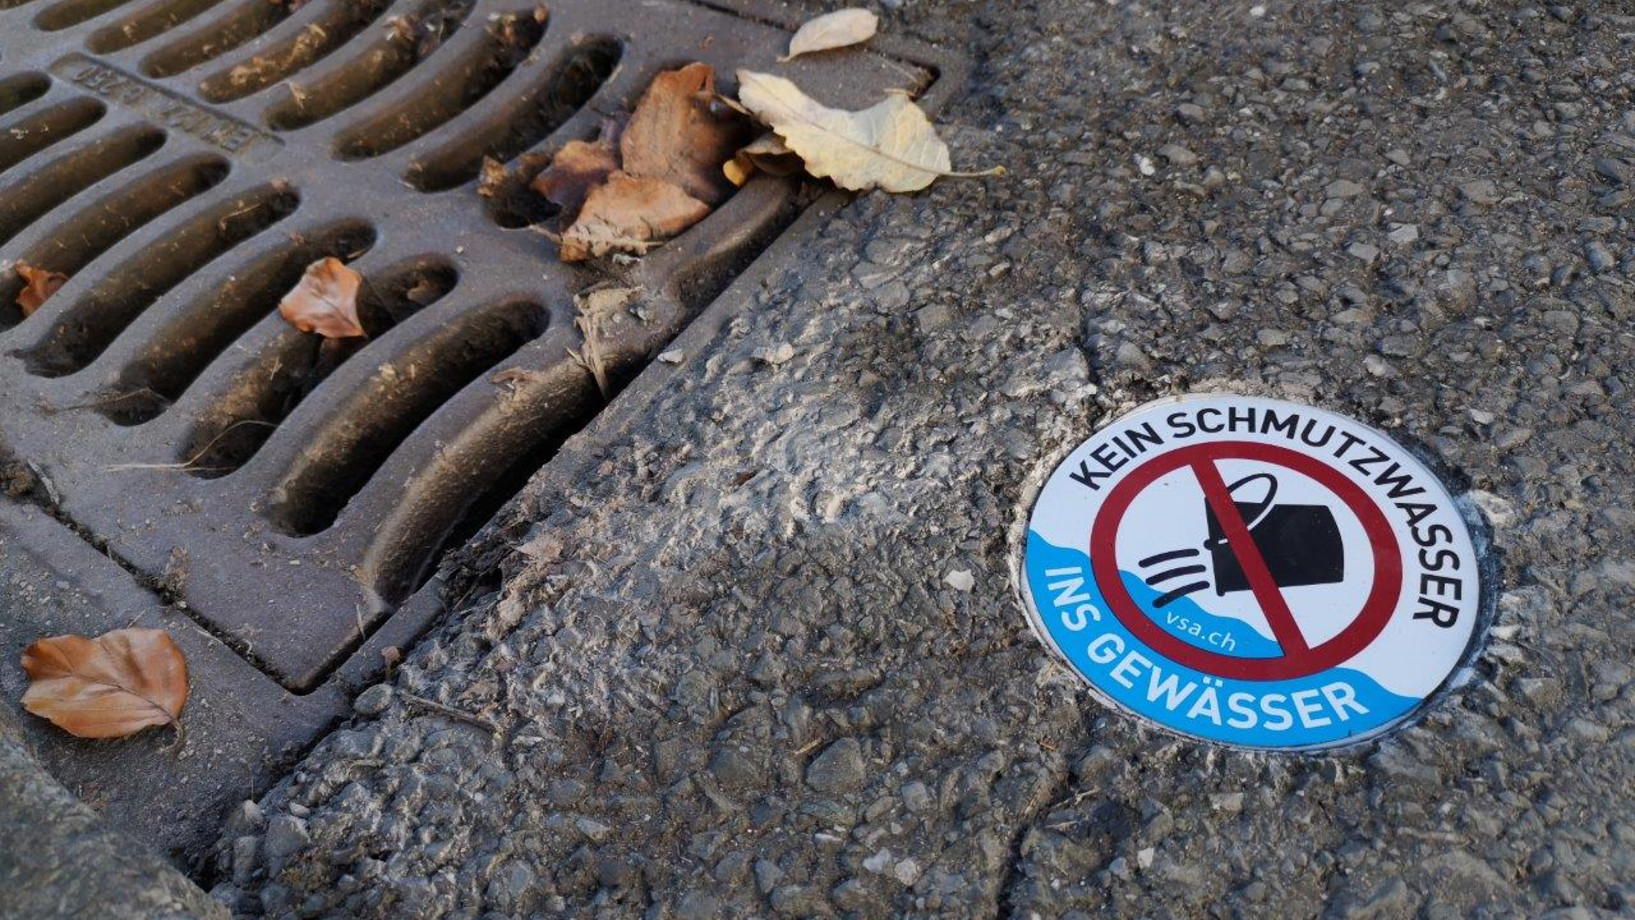 Foto eines Entwässerungsschachts an einer Strasse mit Verbotsschild "Kein Schmutzwasser ins Gewässer"!